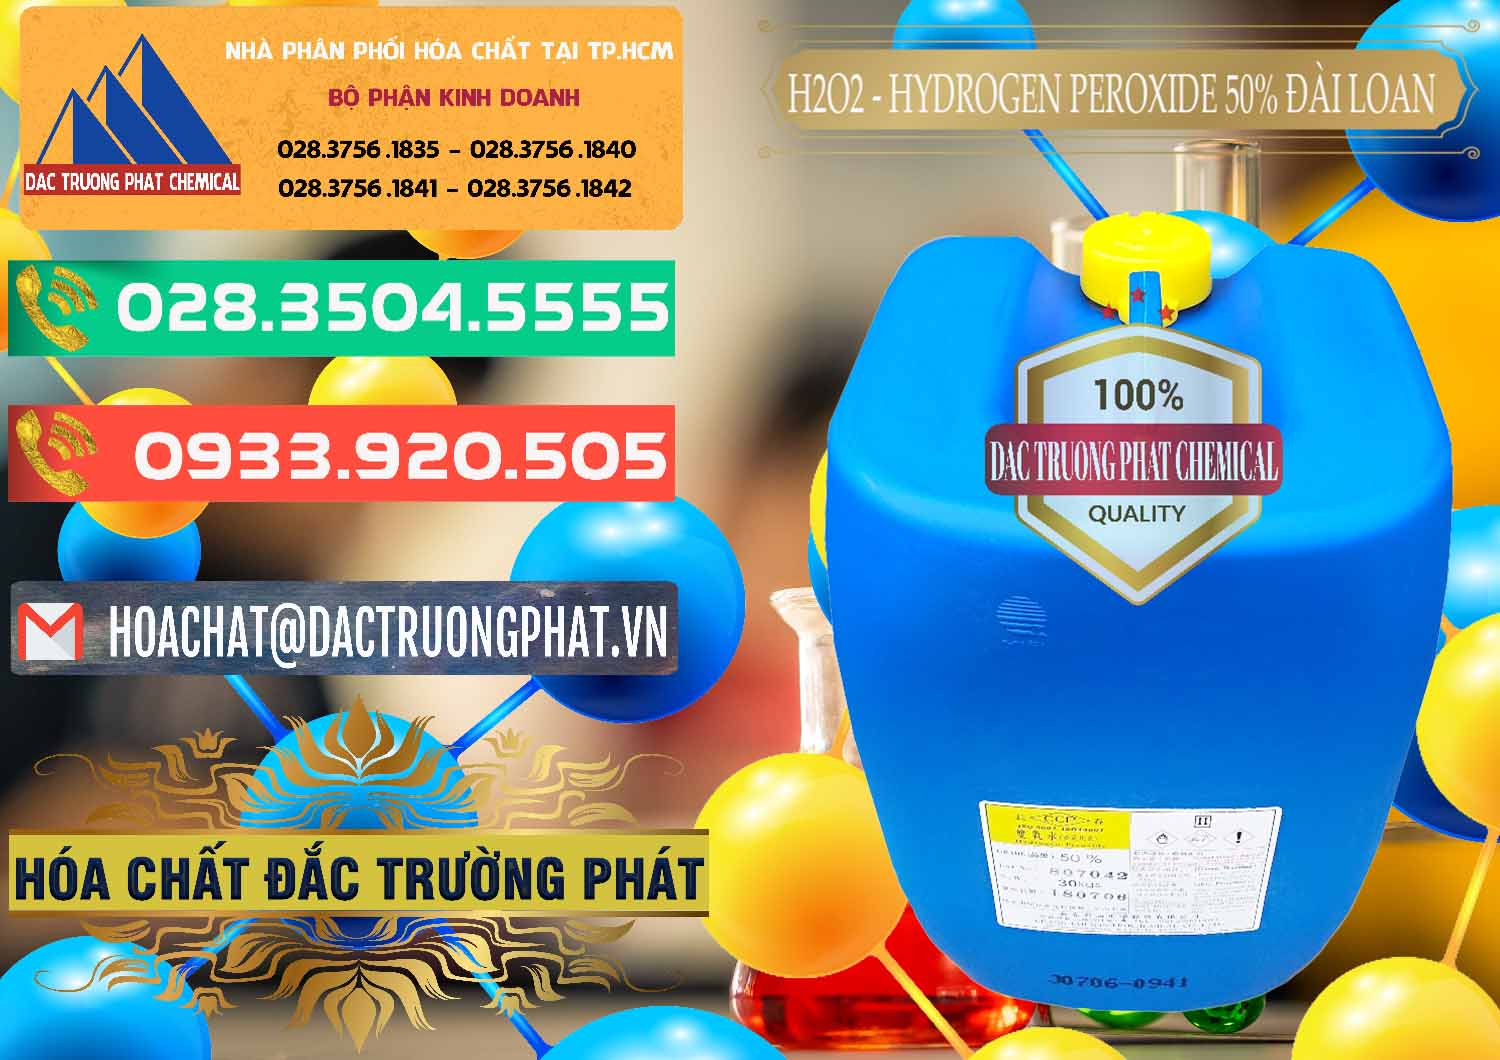 Nơi chuyên kinh doanh & bán H2O2 - Hydrogen Peroxide 50% Đài Loan Taiwan Chang Chun - 0069 - Cty phân phối & kinh doanh hóa chất tại TP.HCM - congtyhoachat.com.vn